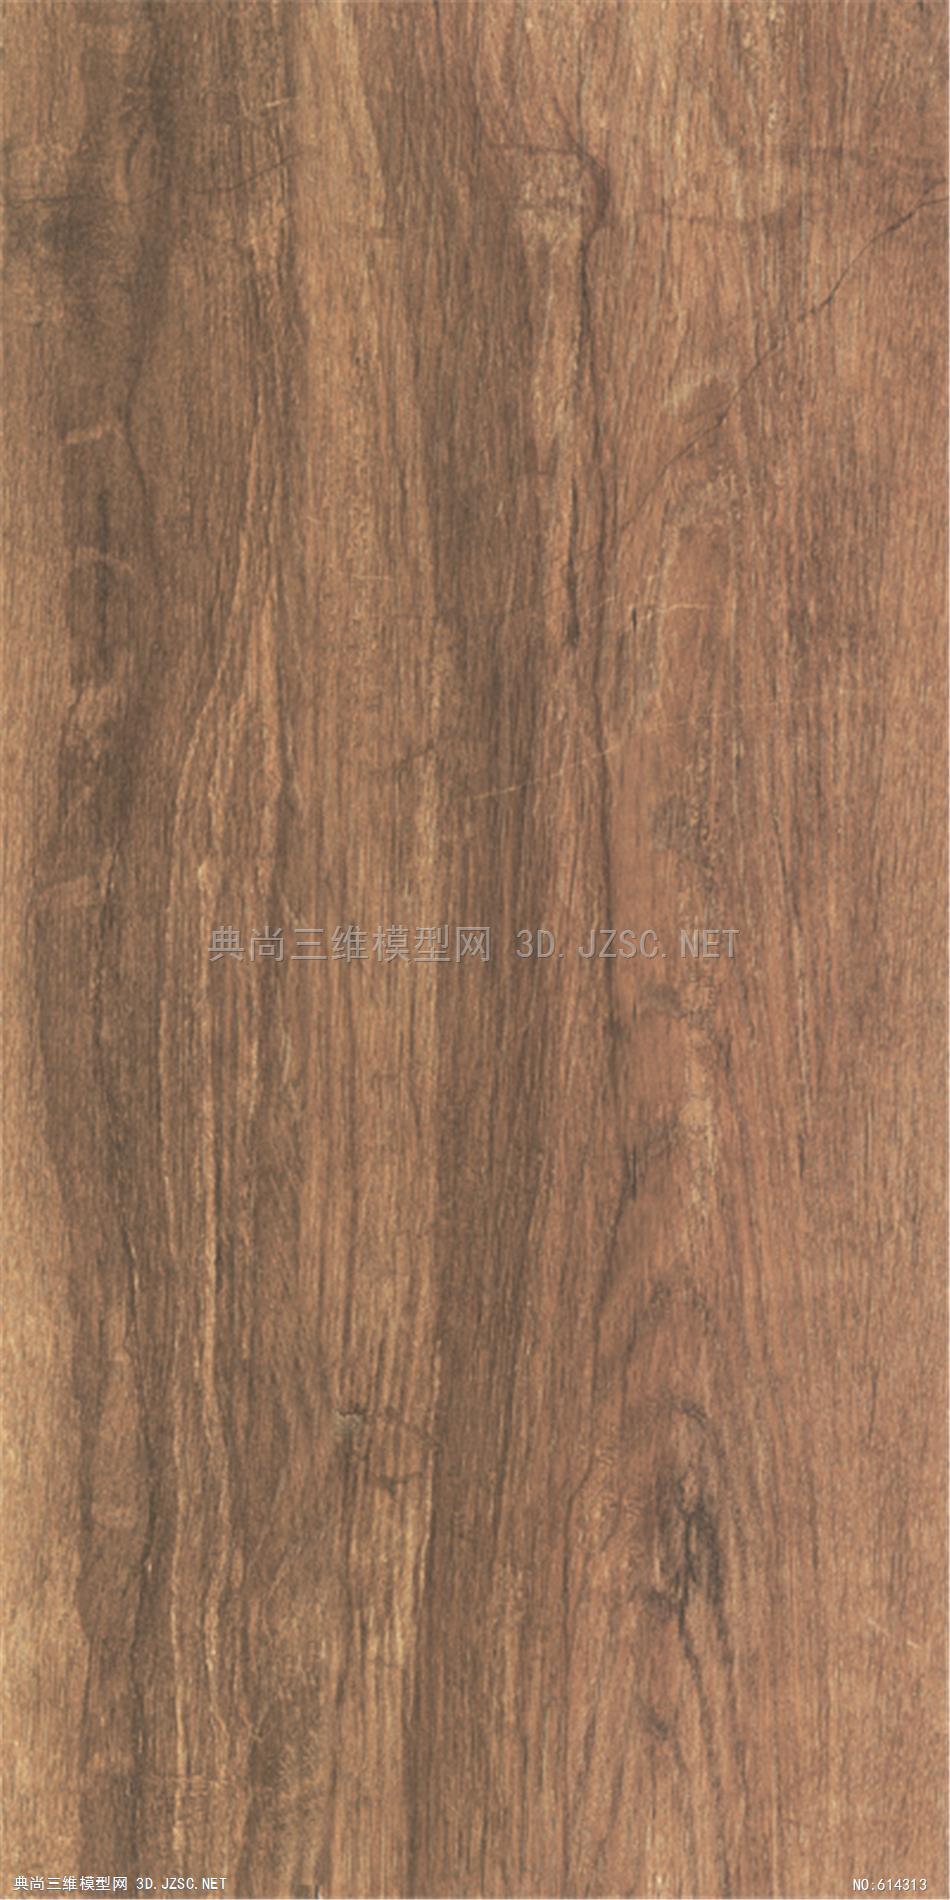 木饰面 木纹 木材  高清材质贴图 (271)